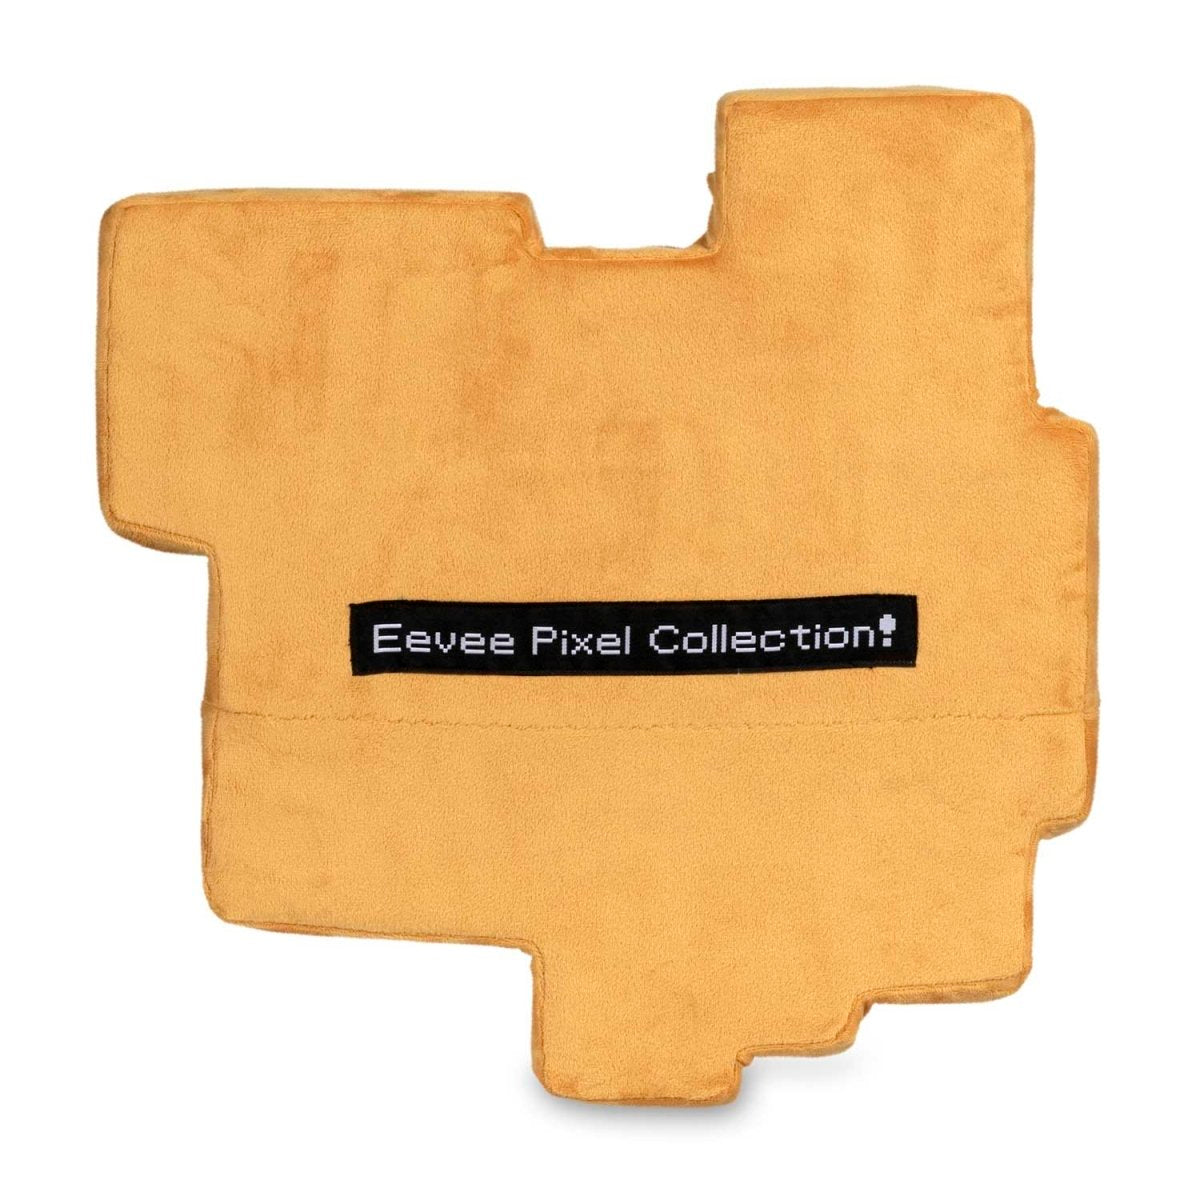 Eevee Pixel Collection - Eevee